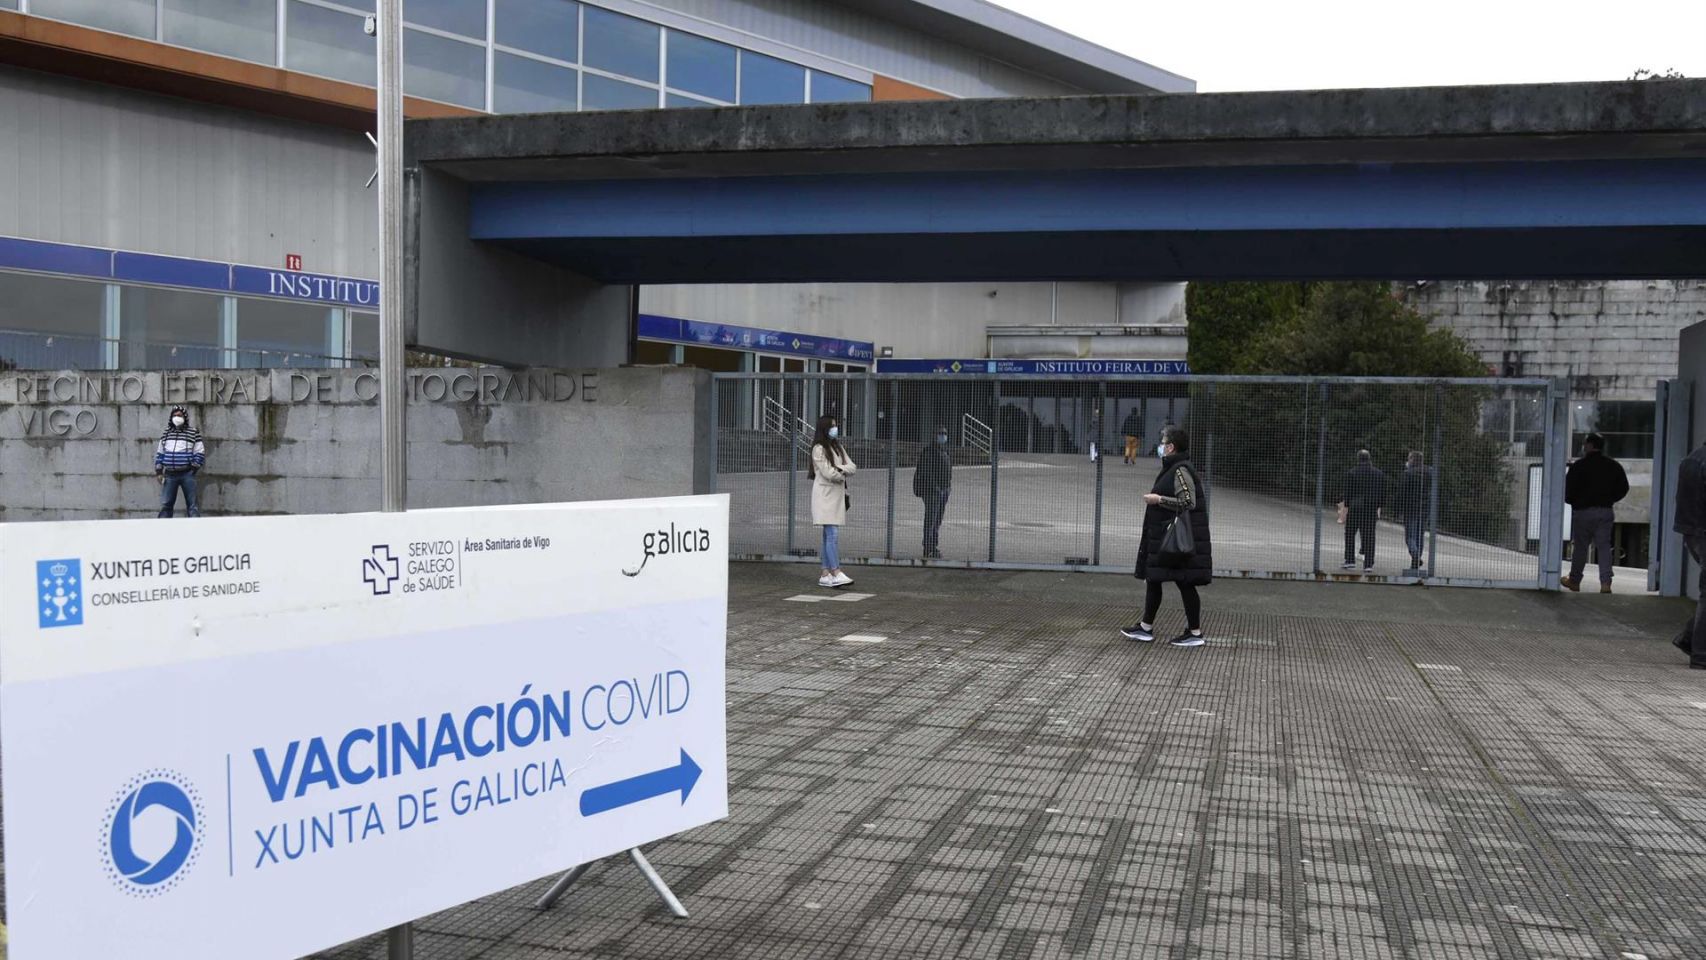 Indicación de Vacinación Covid en el exterior del Instituto Ferial de Vigo.